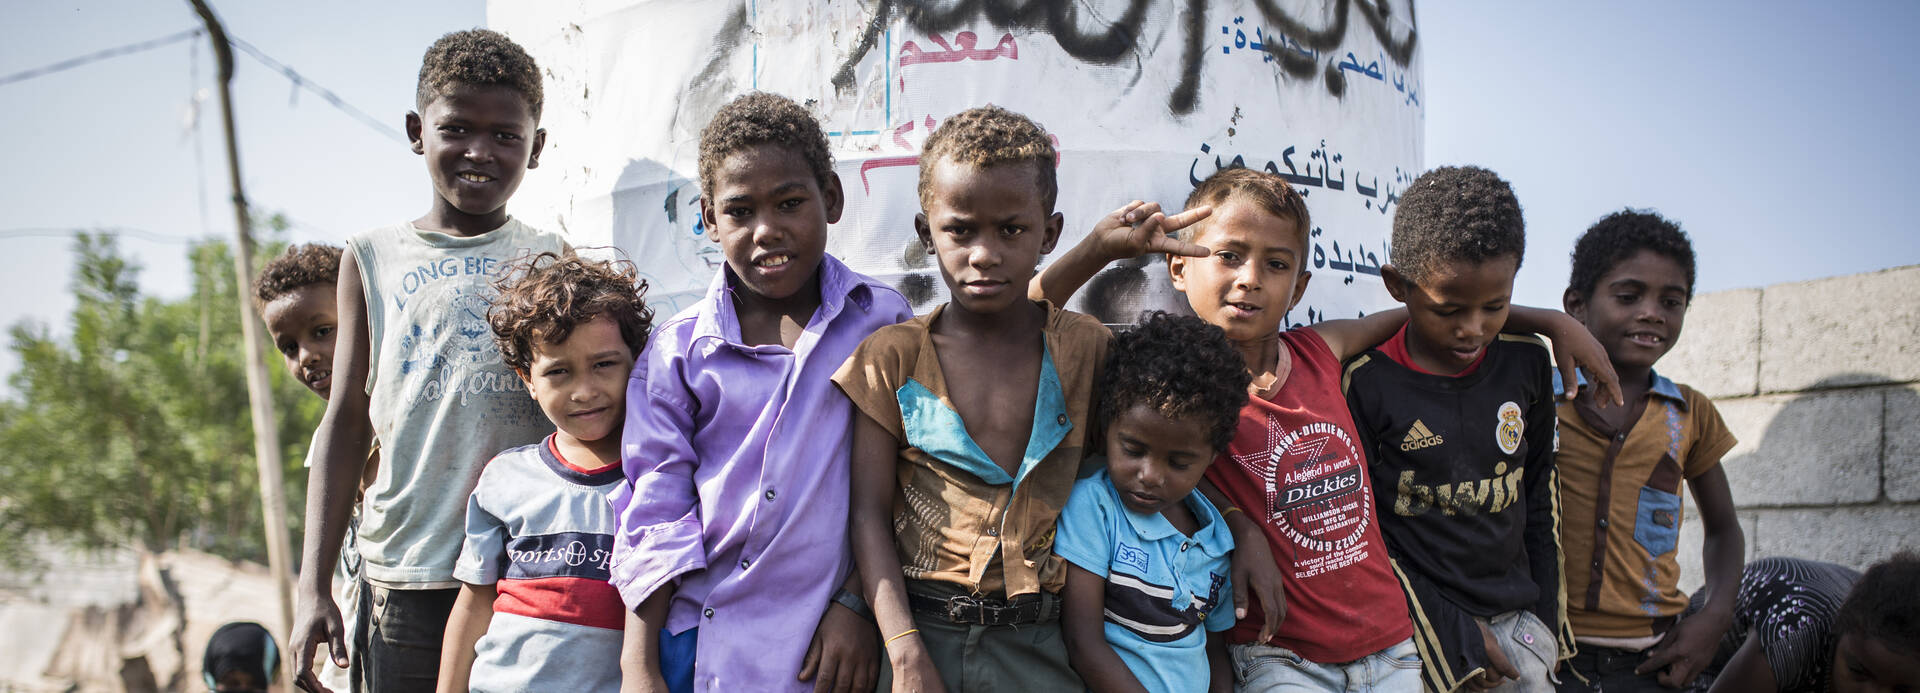 Gruppe von Kindern im Jemen